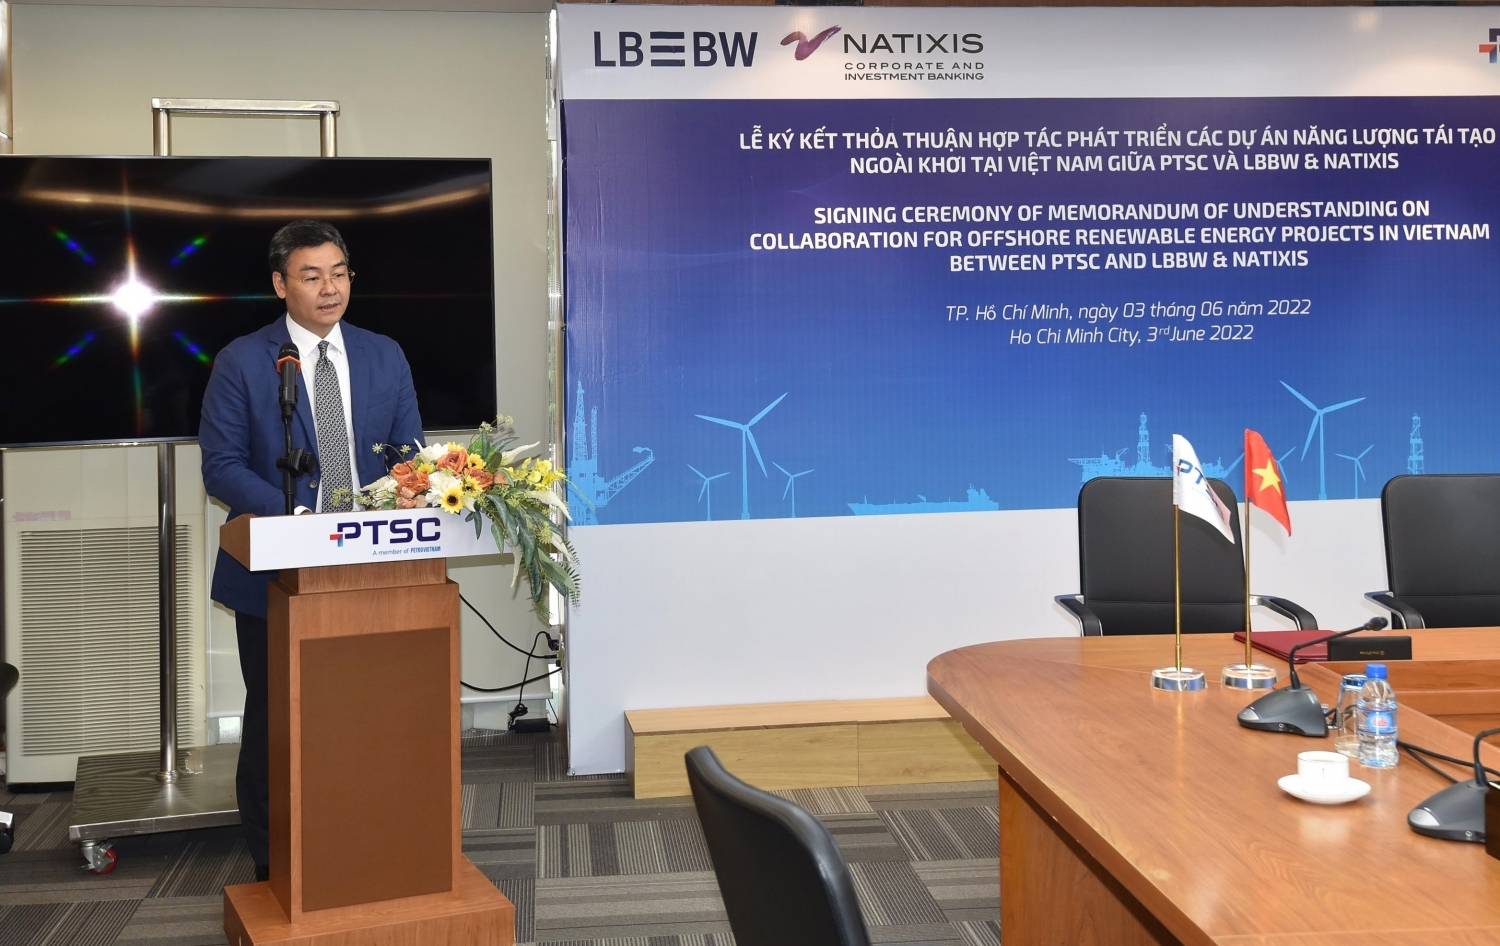 PTSC ký kết Thỏa thuận hợp tác với Tổ hợp ngân hàng LBBW & Natixis CIB về việc phát triển các dự án năng lượng tái tạo ngoài khơi